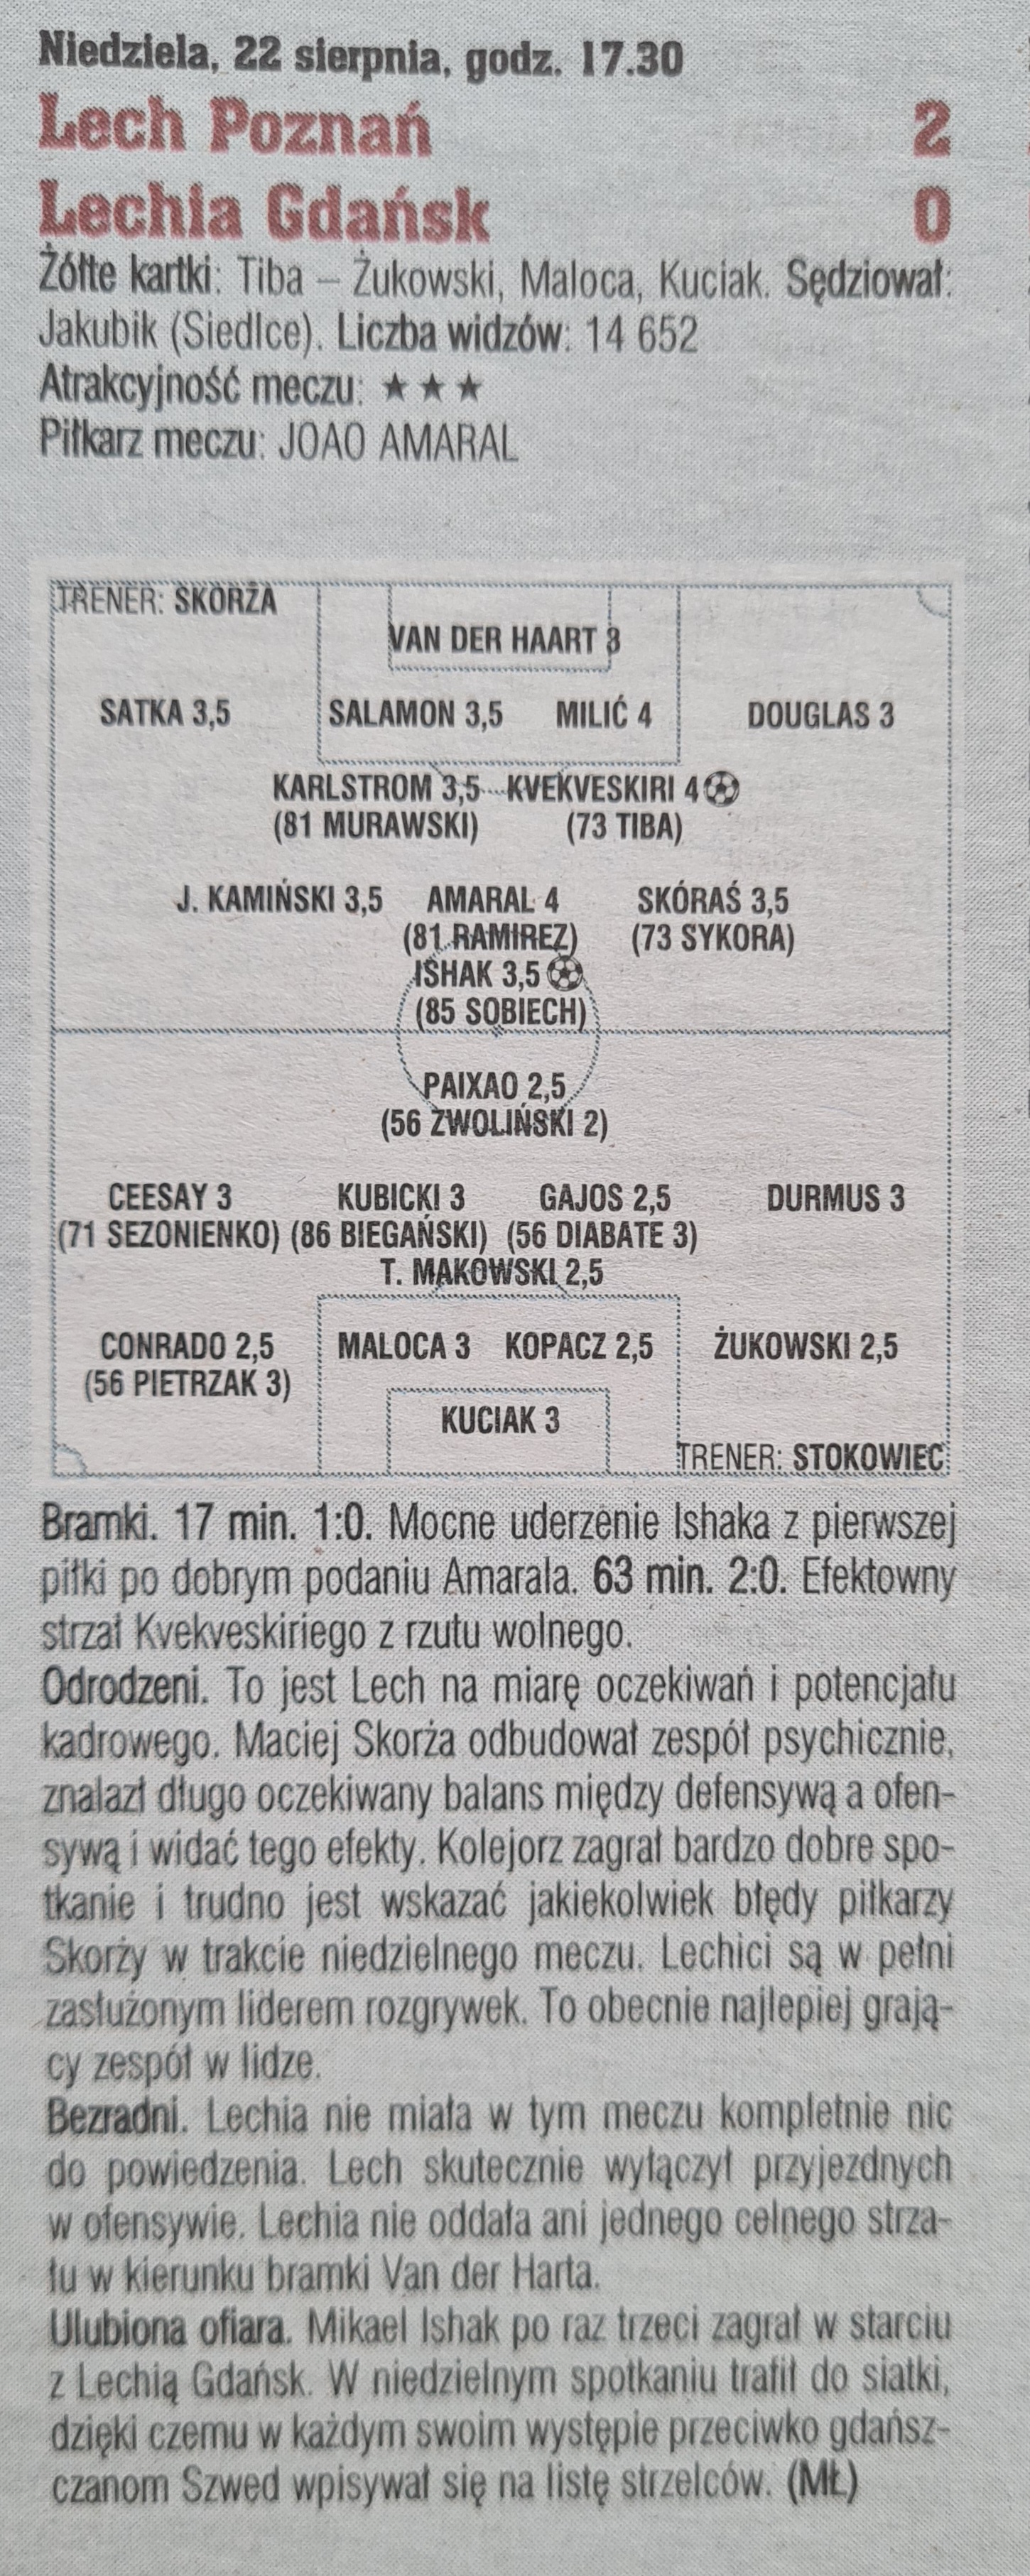 Lech Poznań - Lechia Gdańsk 2:0 (22.08.2021) Tygodnik Piłka Nożna